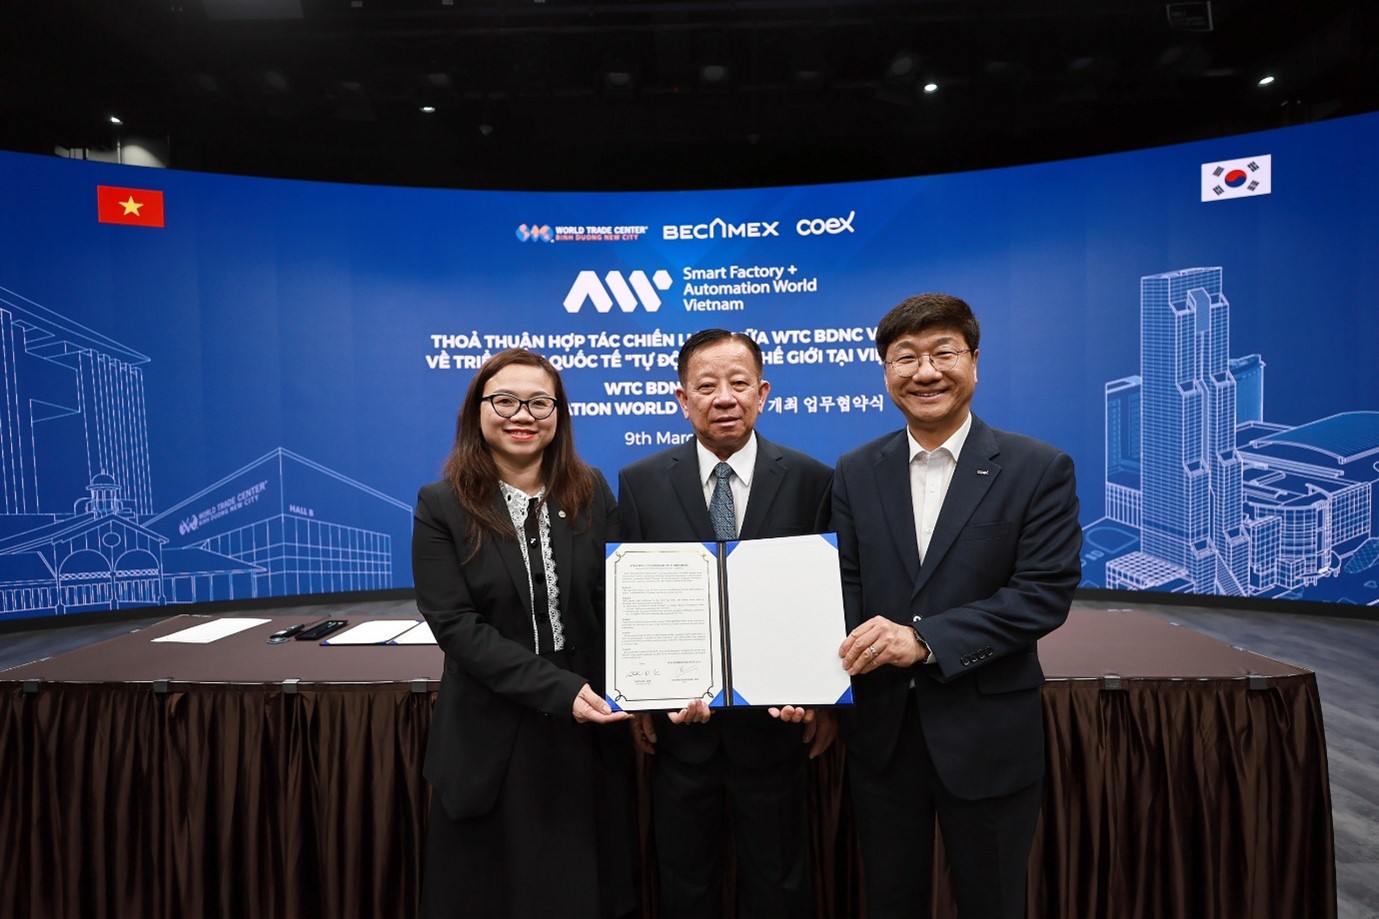 Thỏa thuận hợp tác được ký kết giữa WTC BDNC và Coex, với sự chứng kiến của Lãnh đạo Tổng Công ty Becamex IDC, Lãnh đạo Sở Ngoại vụ tỉnh Bình Dương và Đại diện công ty Coex tại Hàn Quốc